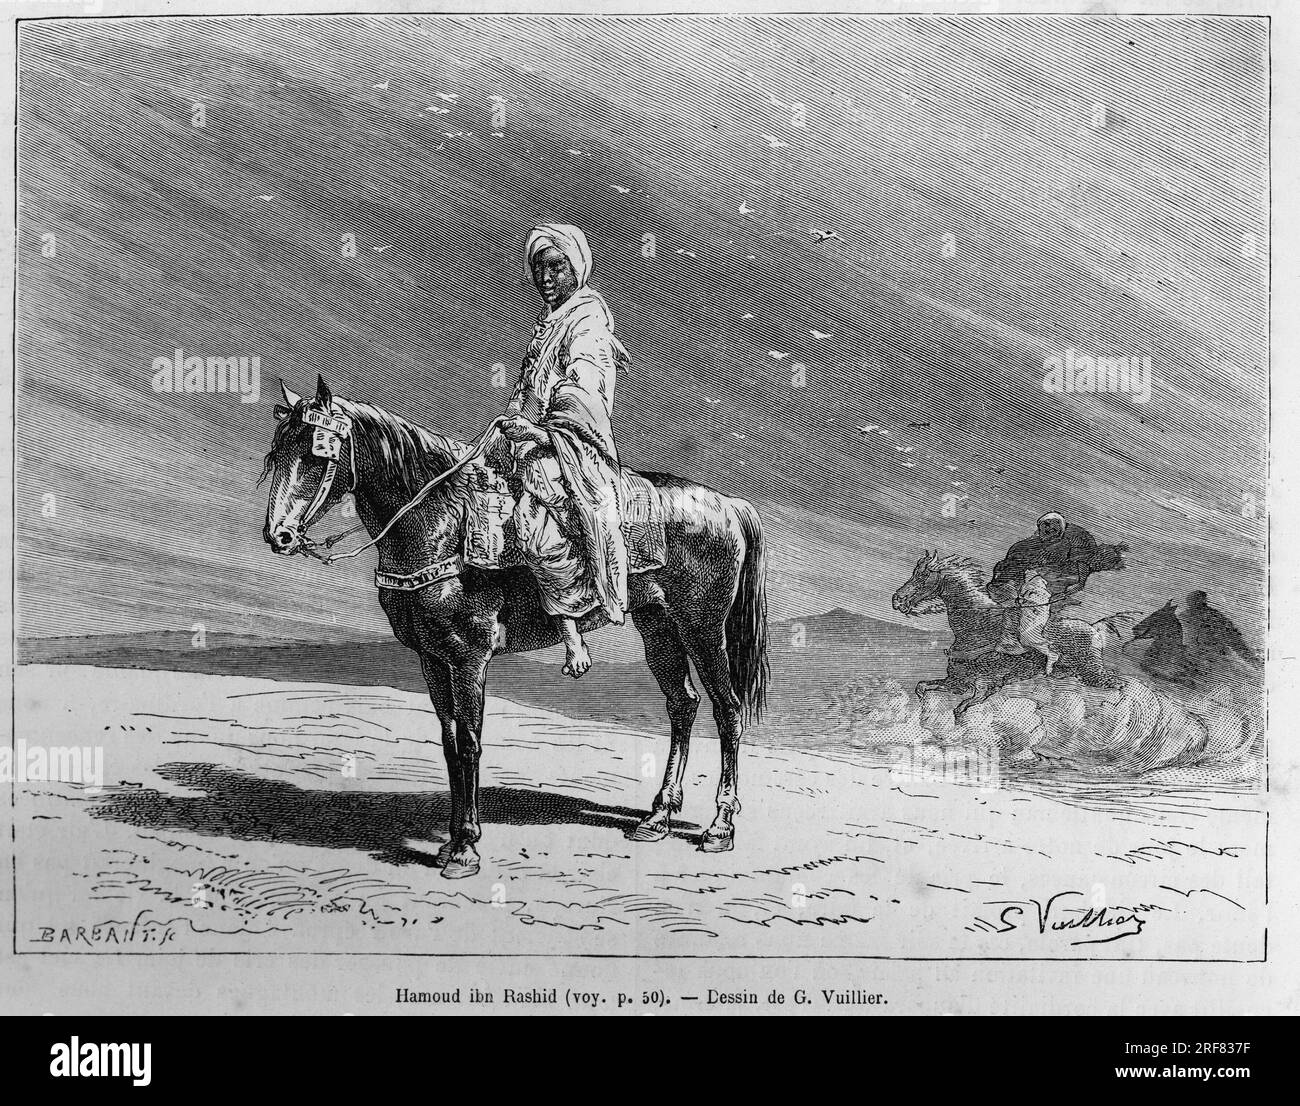 Portrait de Hamoud Ibn Rashid , sur son cheval, appartenant a la famille de l'emir de Hail ( Arabie Saoudite) et ami des voyageurs. Gravure de Y.Pranishnikoff, pour illustrer le recit 'pelerinage au Nedjed, berceau de la race arabe', par Lady Anna Blunt, en 1878-1879, publie dans le Tour du monde, sous la direction d'Edouard Charton ( 1807-1890), 1882, Paris. Stock Photo